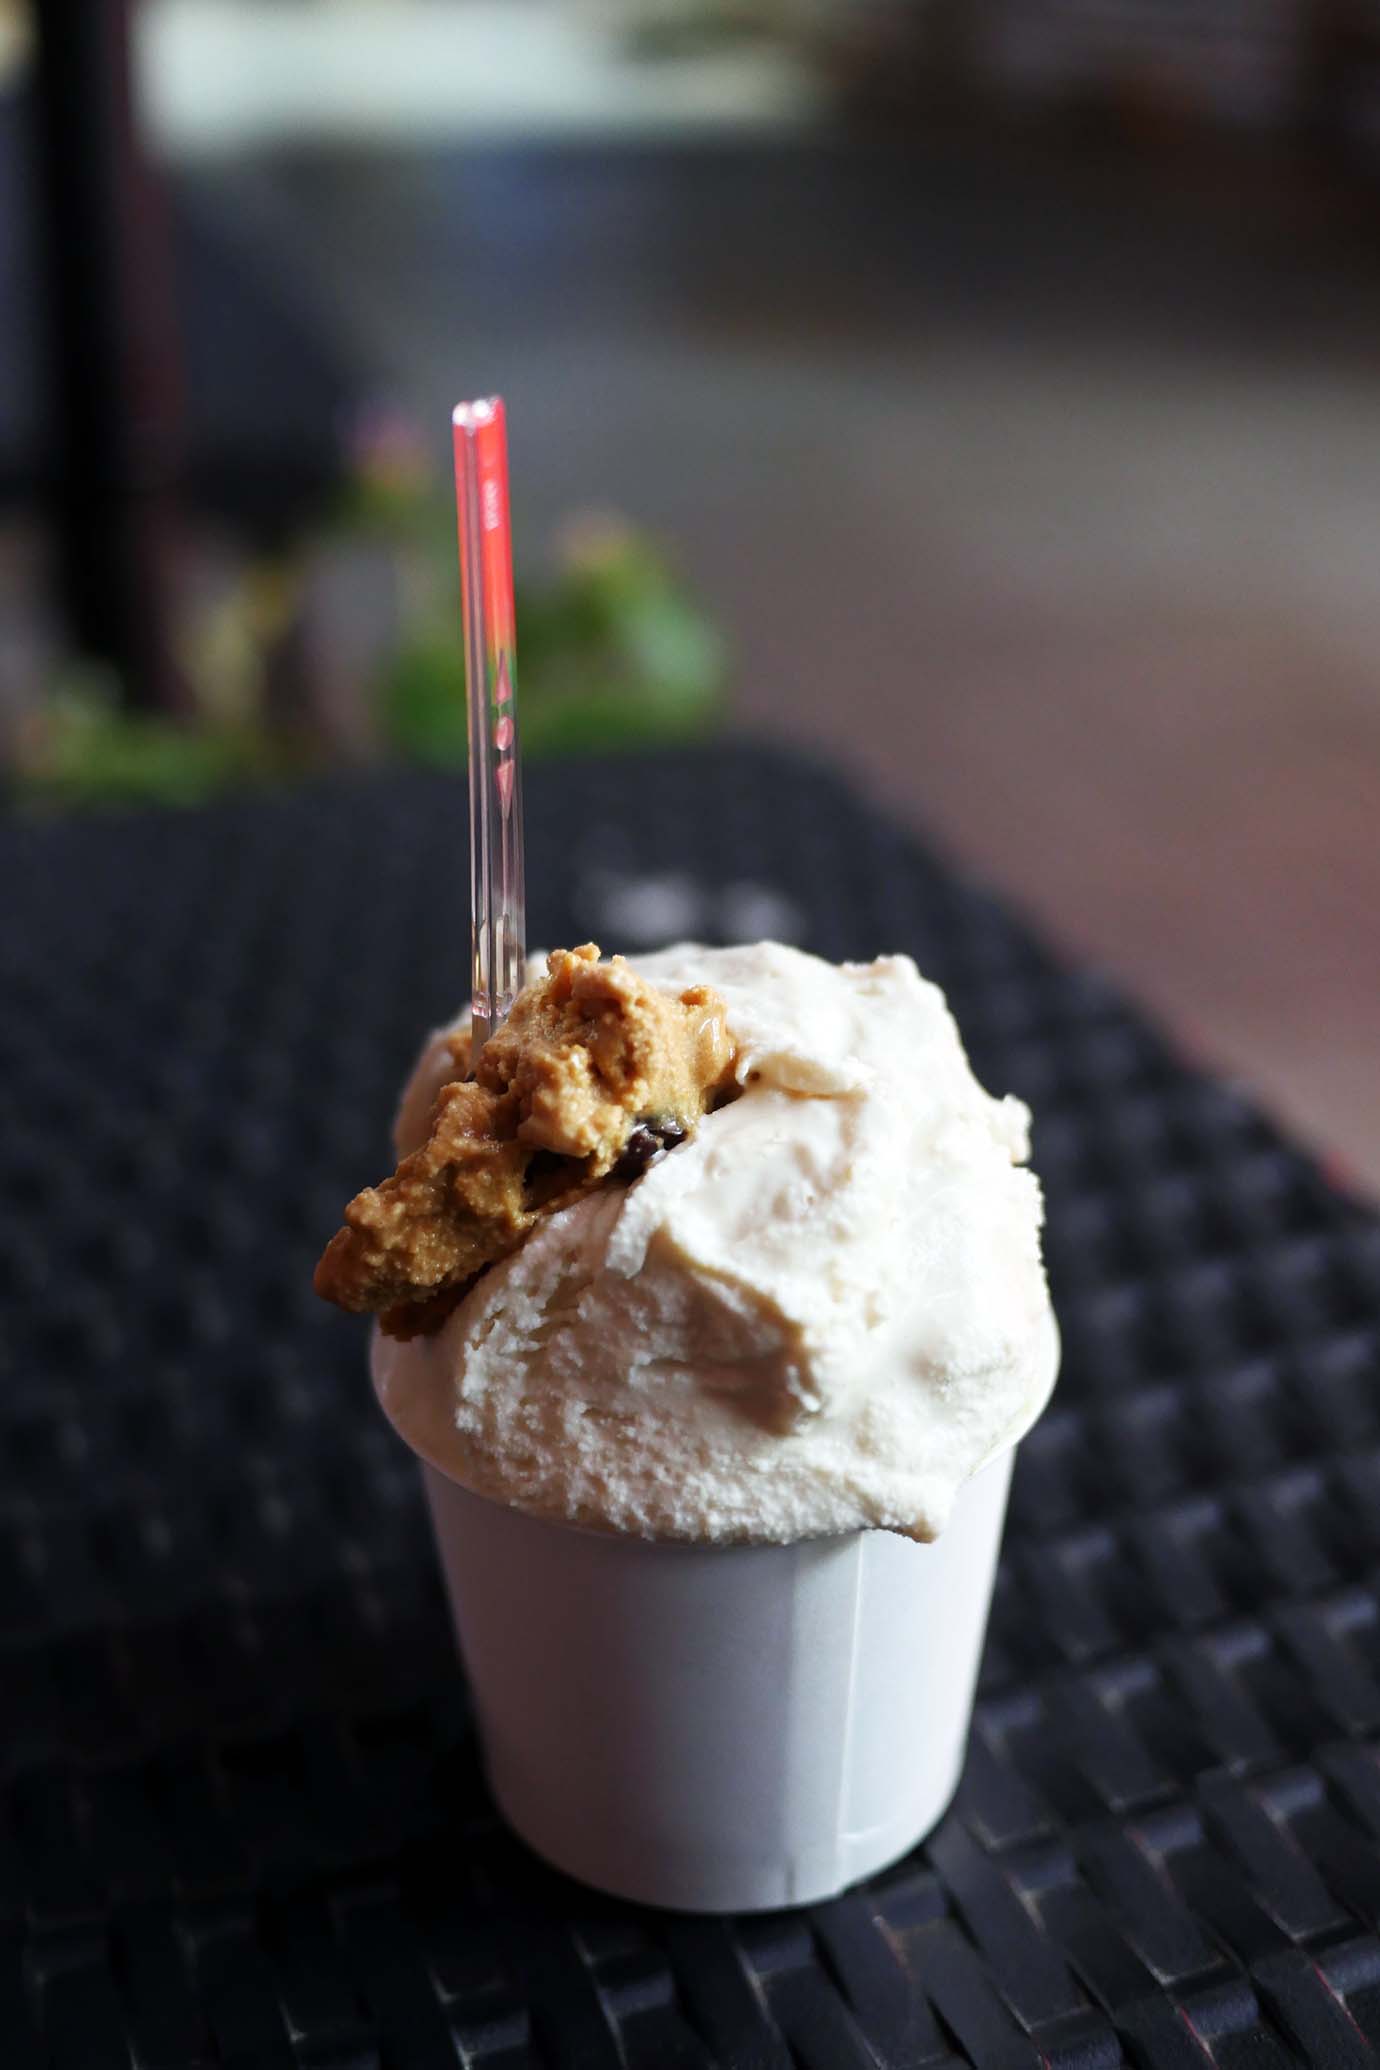 【濃厚グルメ】日本一の純生アイスクリームが食べられる冷乳果工房GENOVA / 市民のほとんどが食べた経験アリ!?